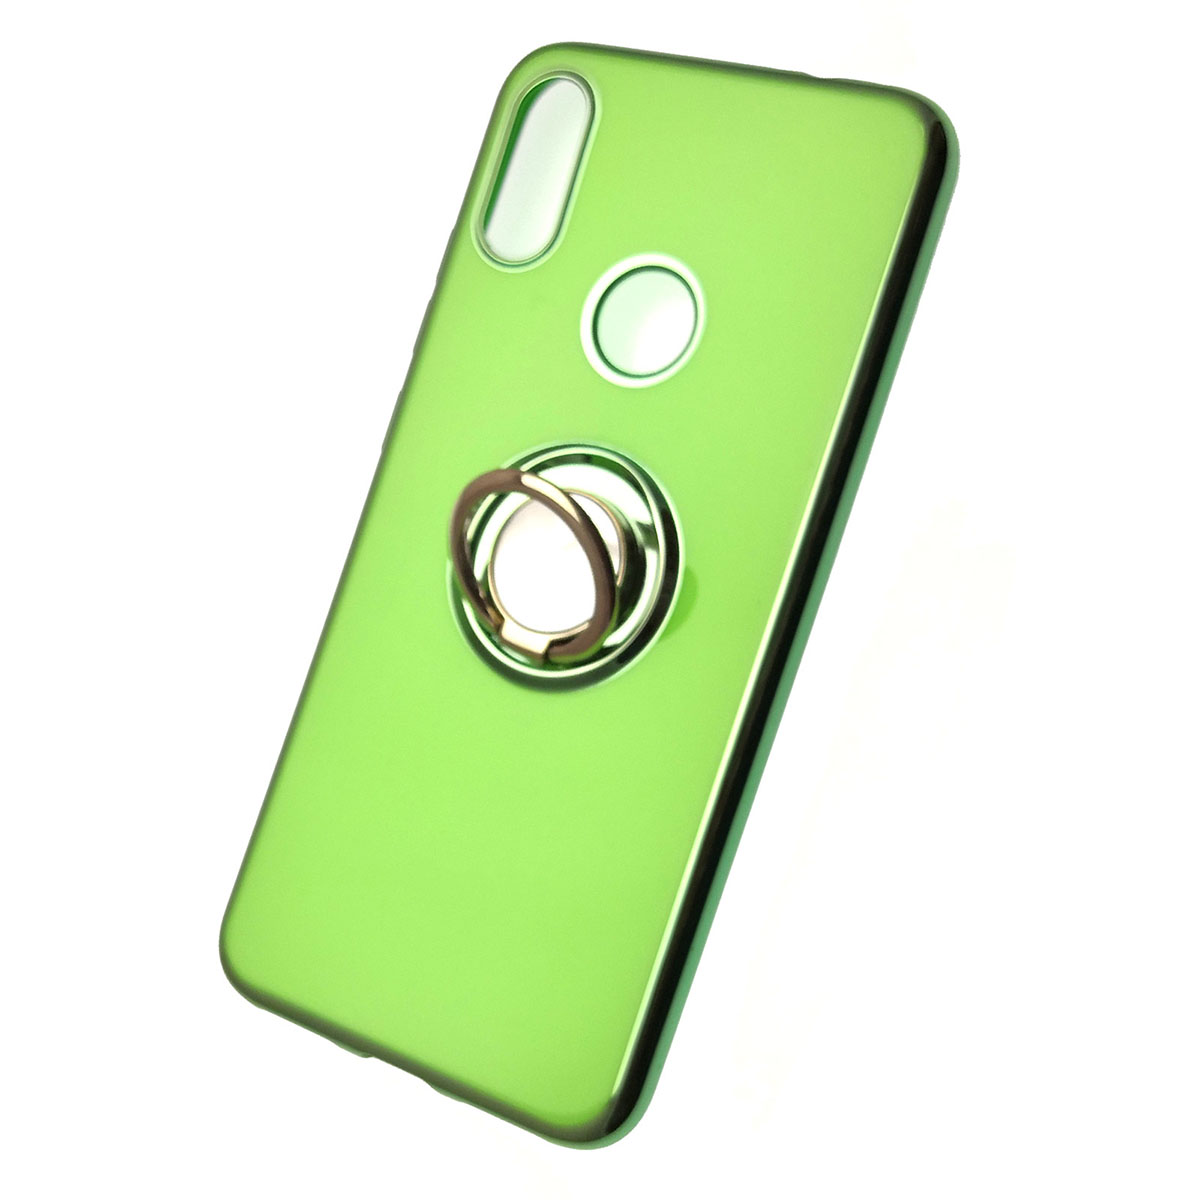 Чехол накладка для XIAOMI Redmi Note 7, Note 7 Pro, силикон, кольцо держатель, цвет зеленый.